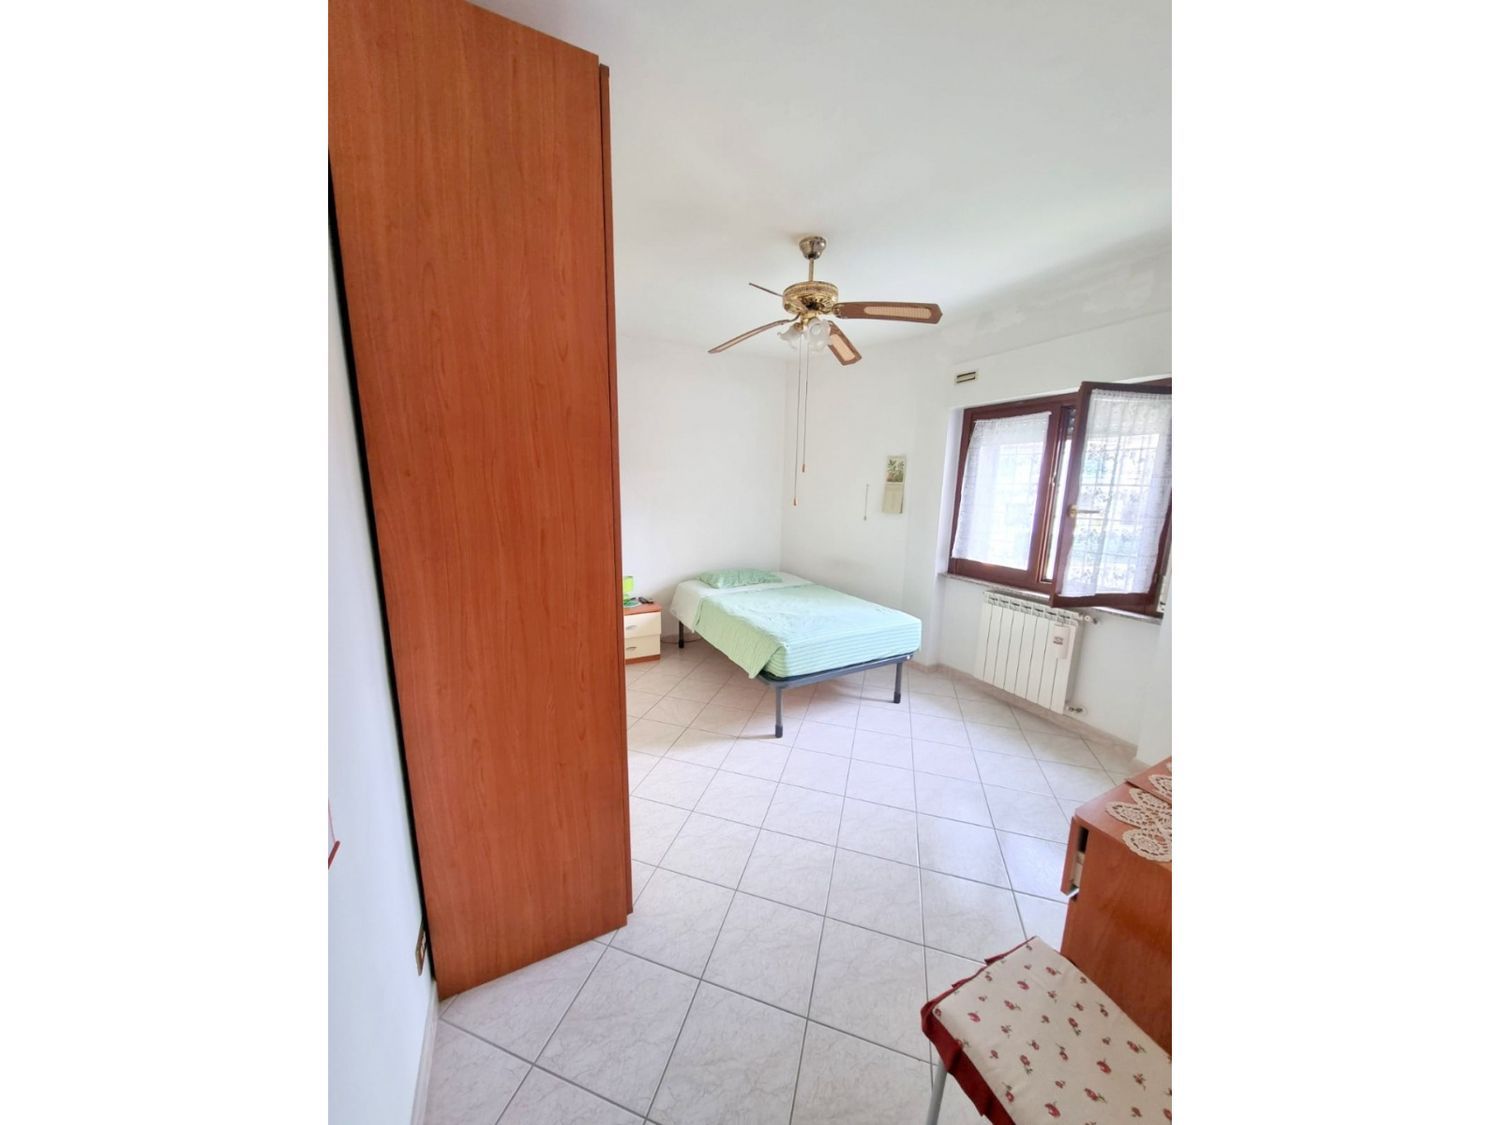 Appartamento in vendita a Ardea, 3 locali, prezzo € 69.000 | CambioCasa.it